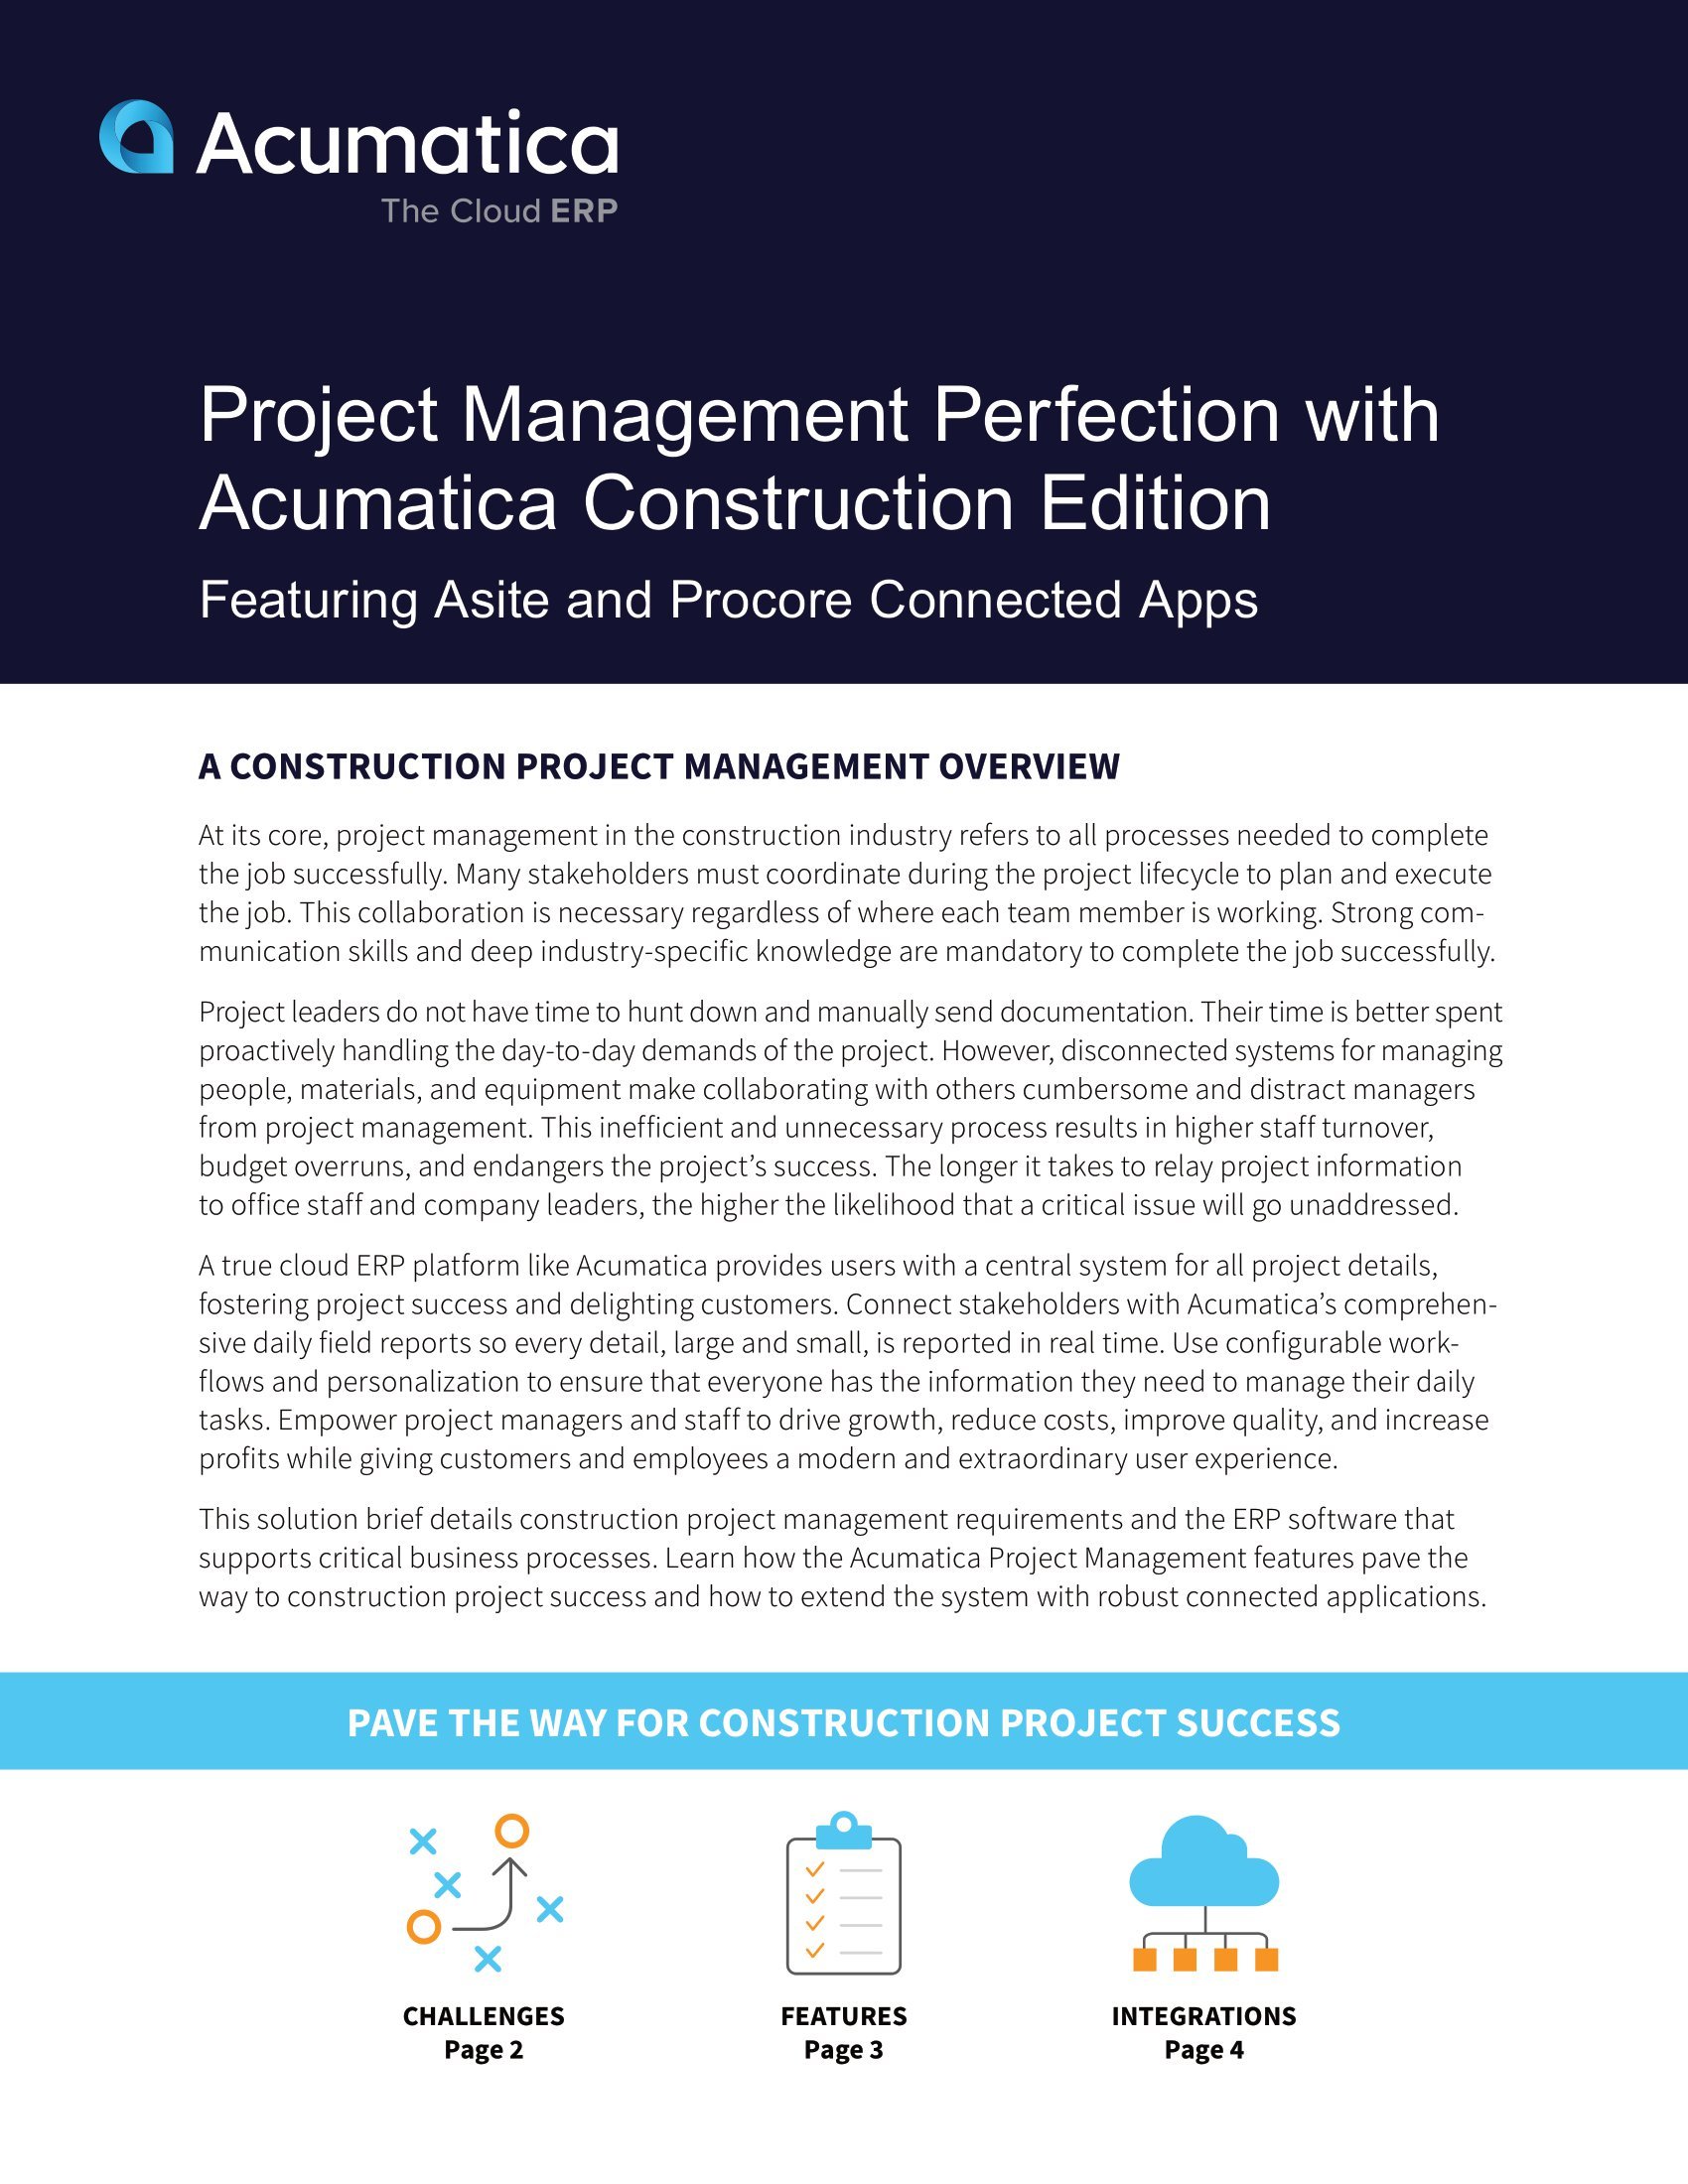 Améliorer la gestion des projets de construction avec Acumatica Construction Edition